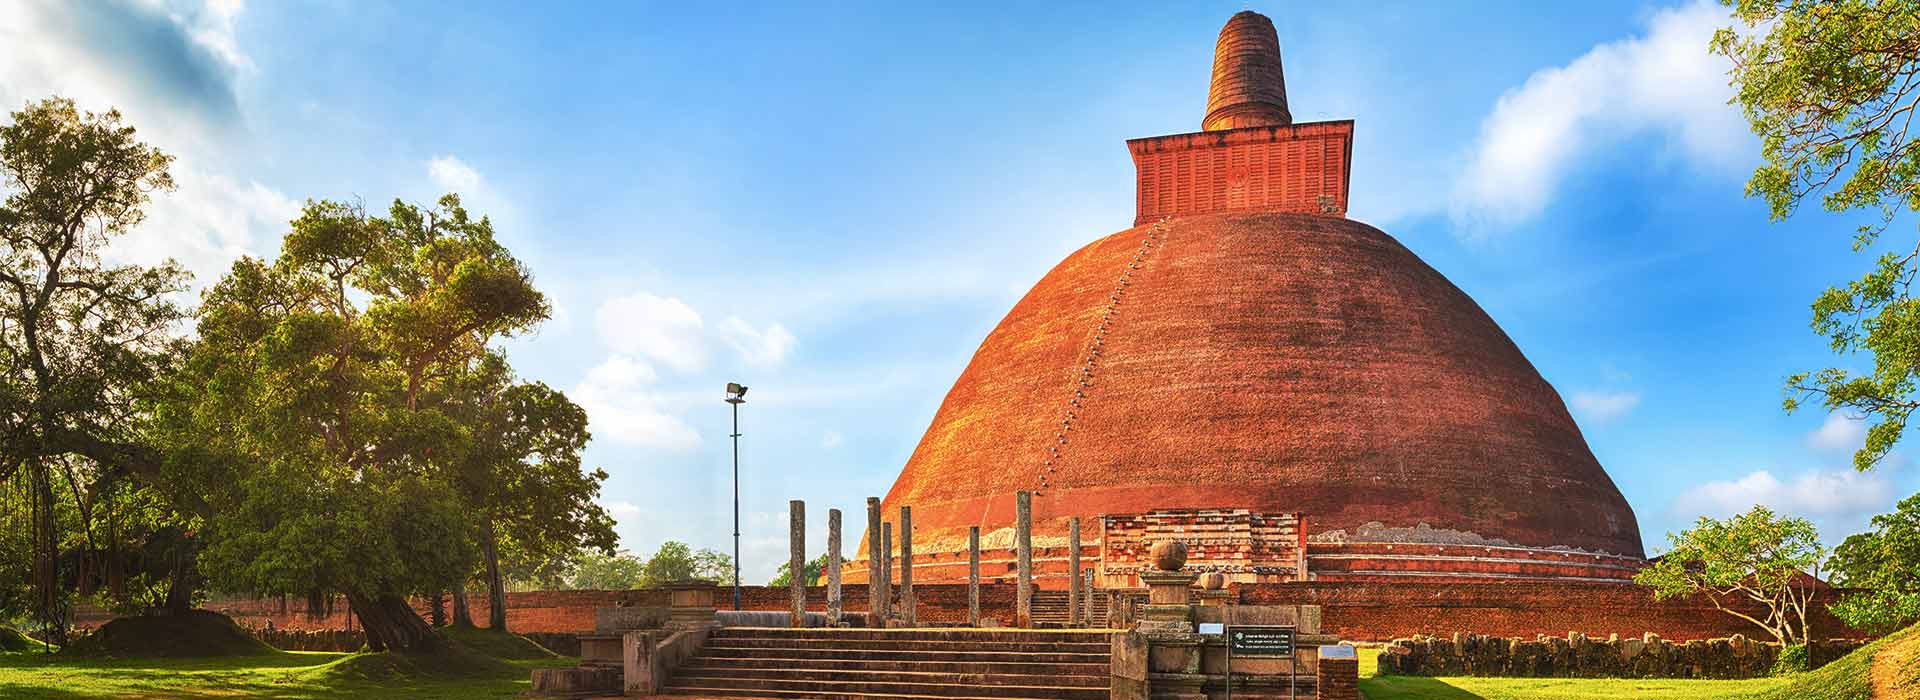 The Ancient Wonders of Anuradhapura